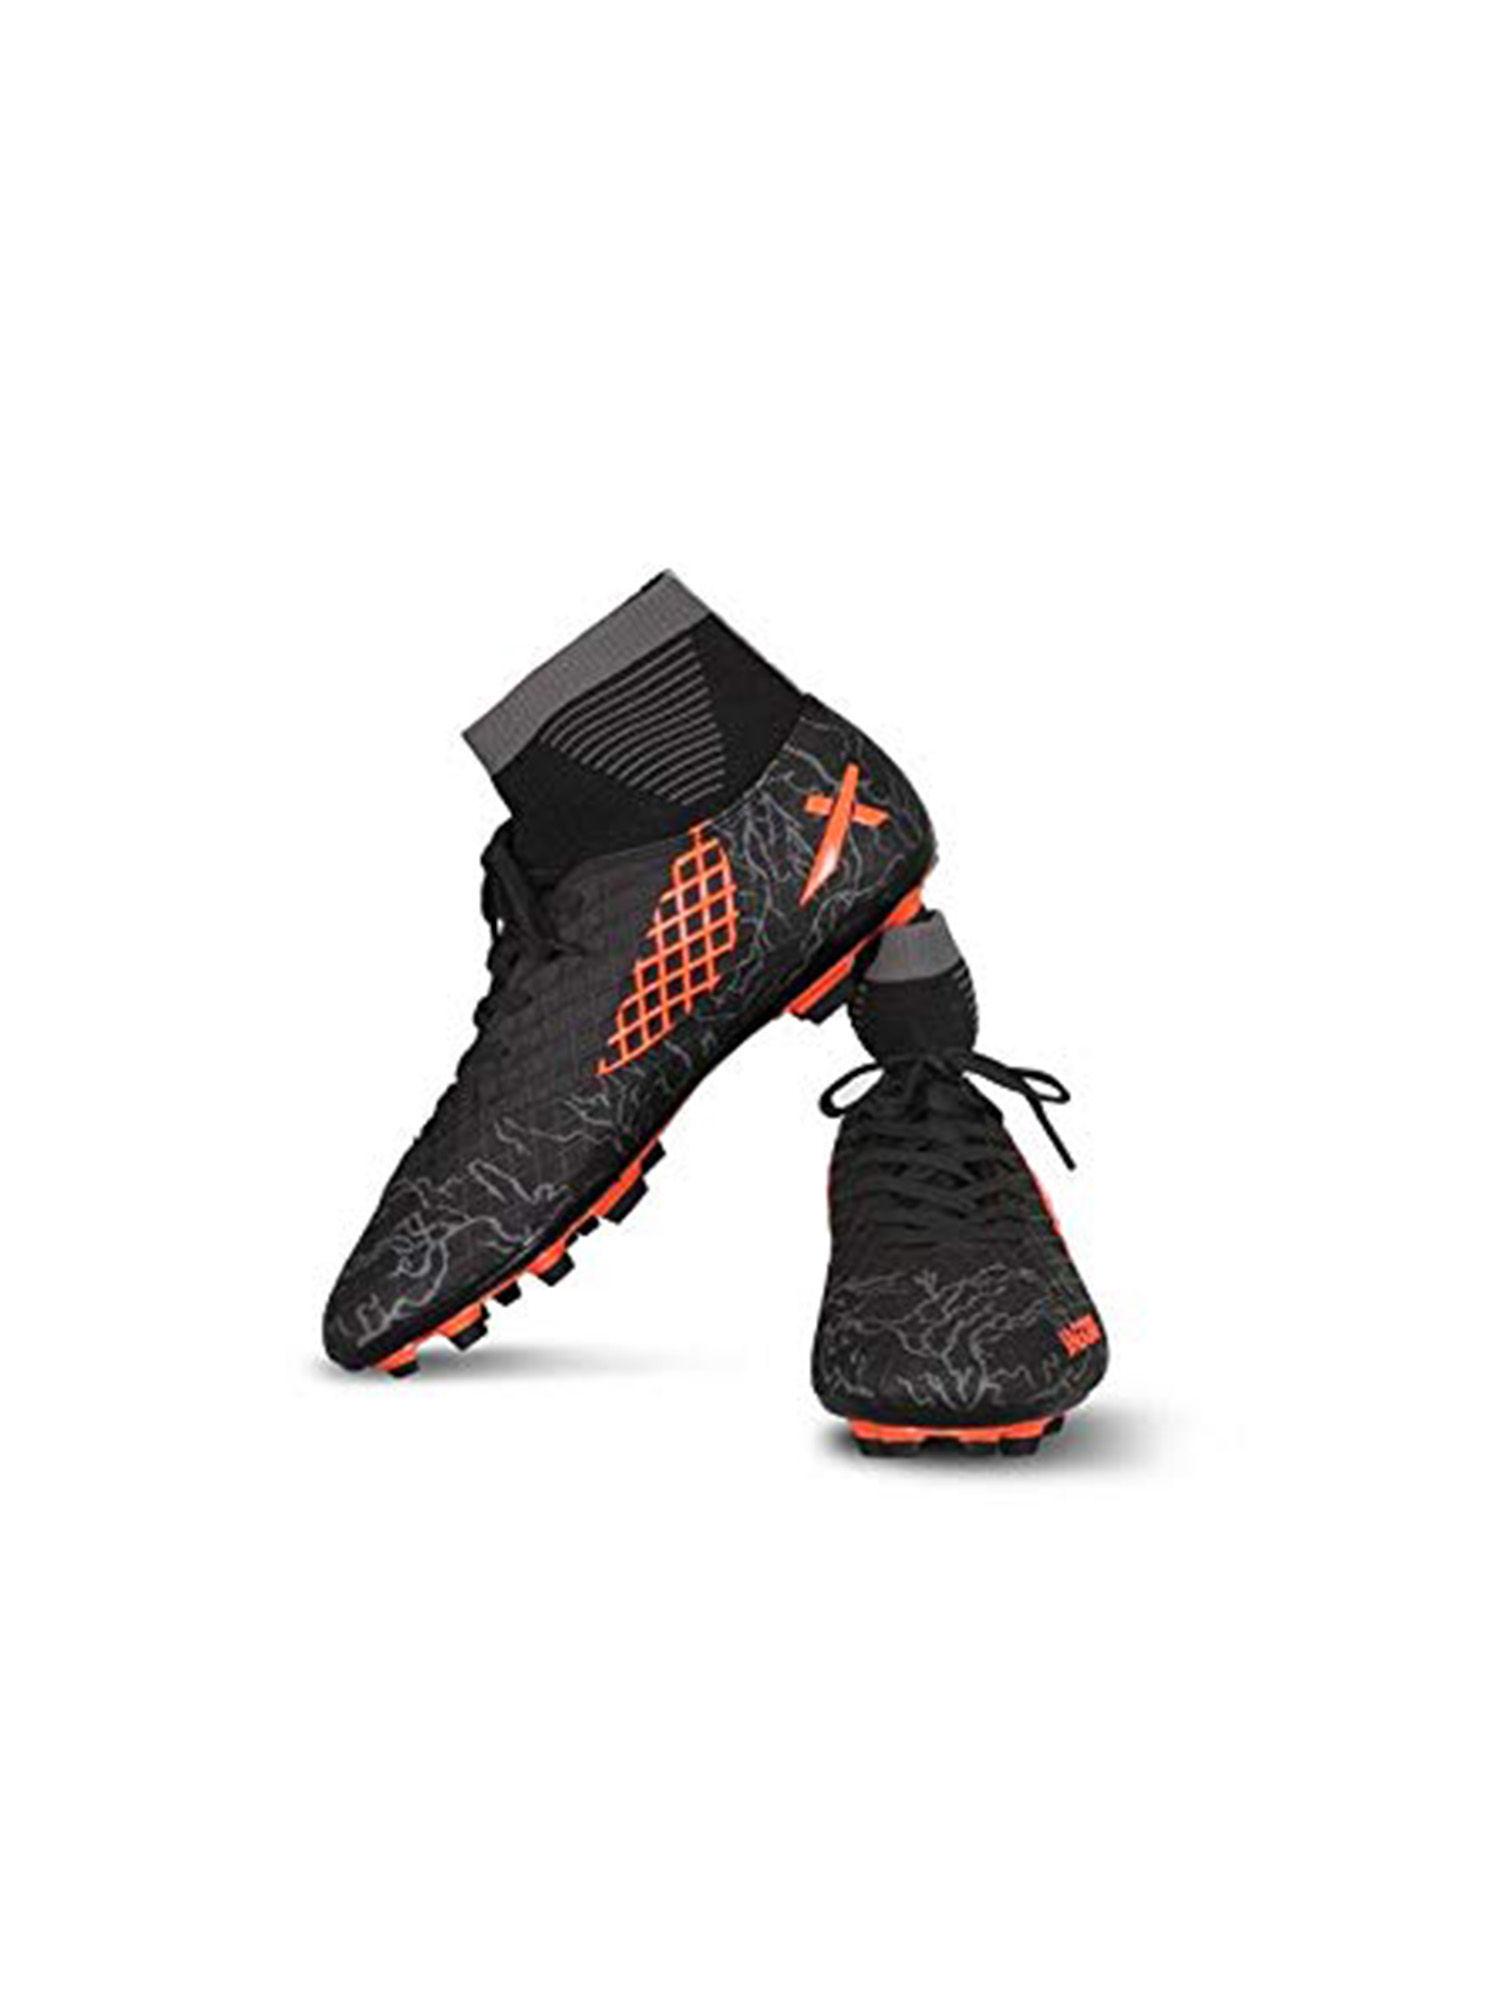 jaguar football shoes for men - black - orange